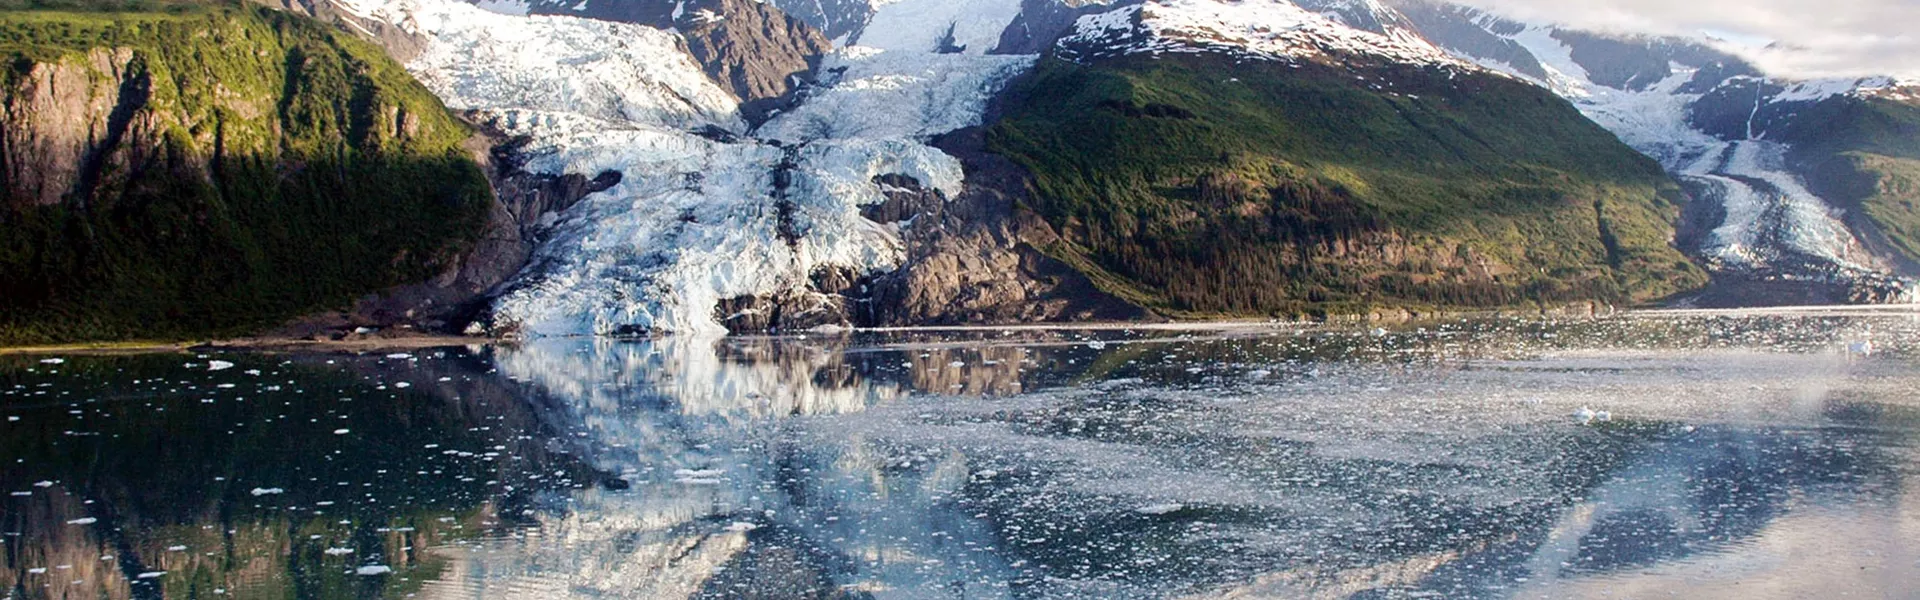 Glacier bay in Alaska, USA